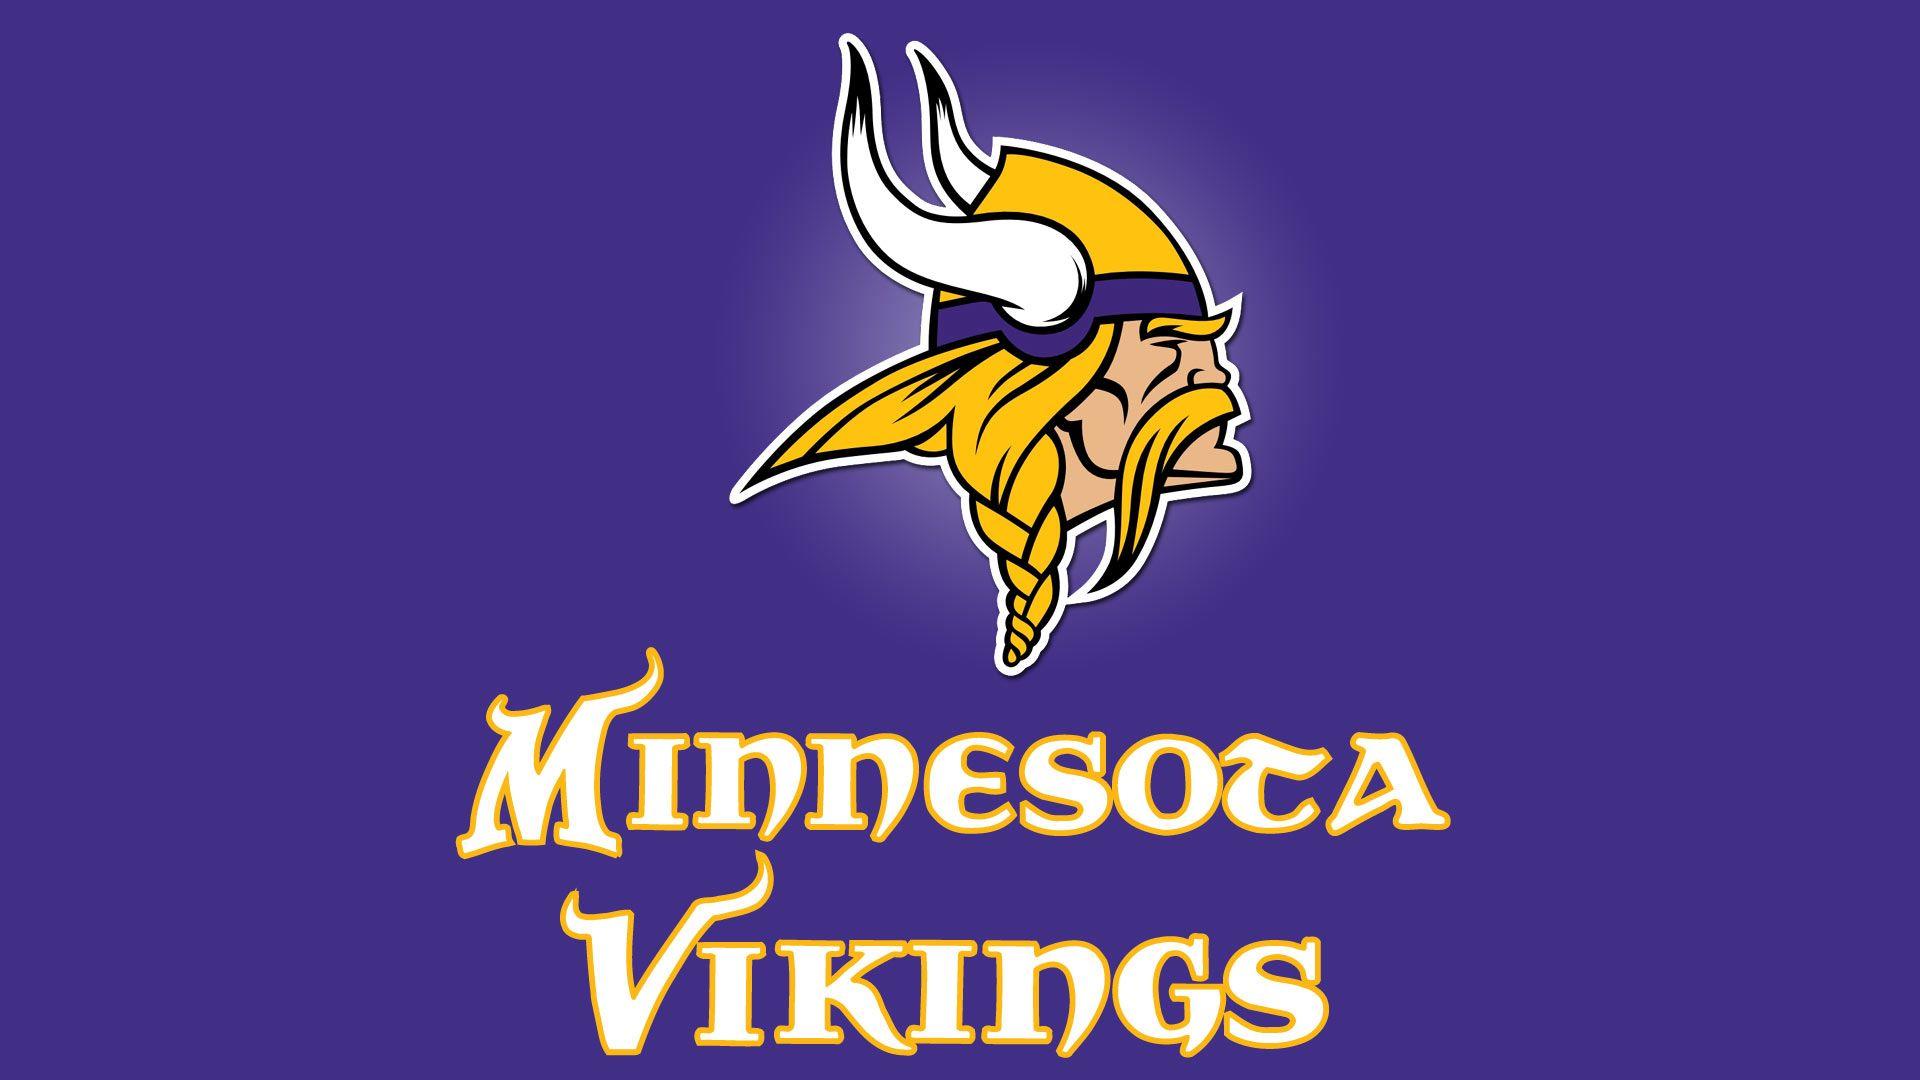 Vikings Football Logo - 2015 Vikings: Contenders or Pretenders? (Answer: Pretenders)